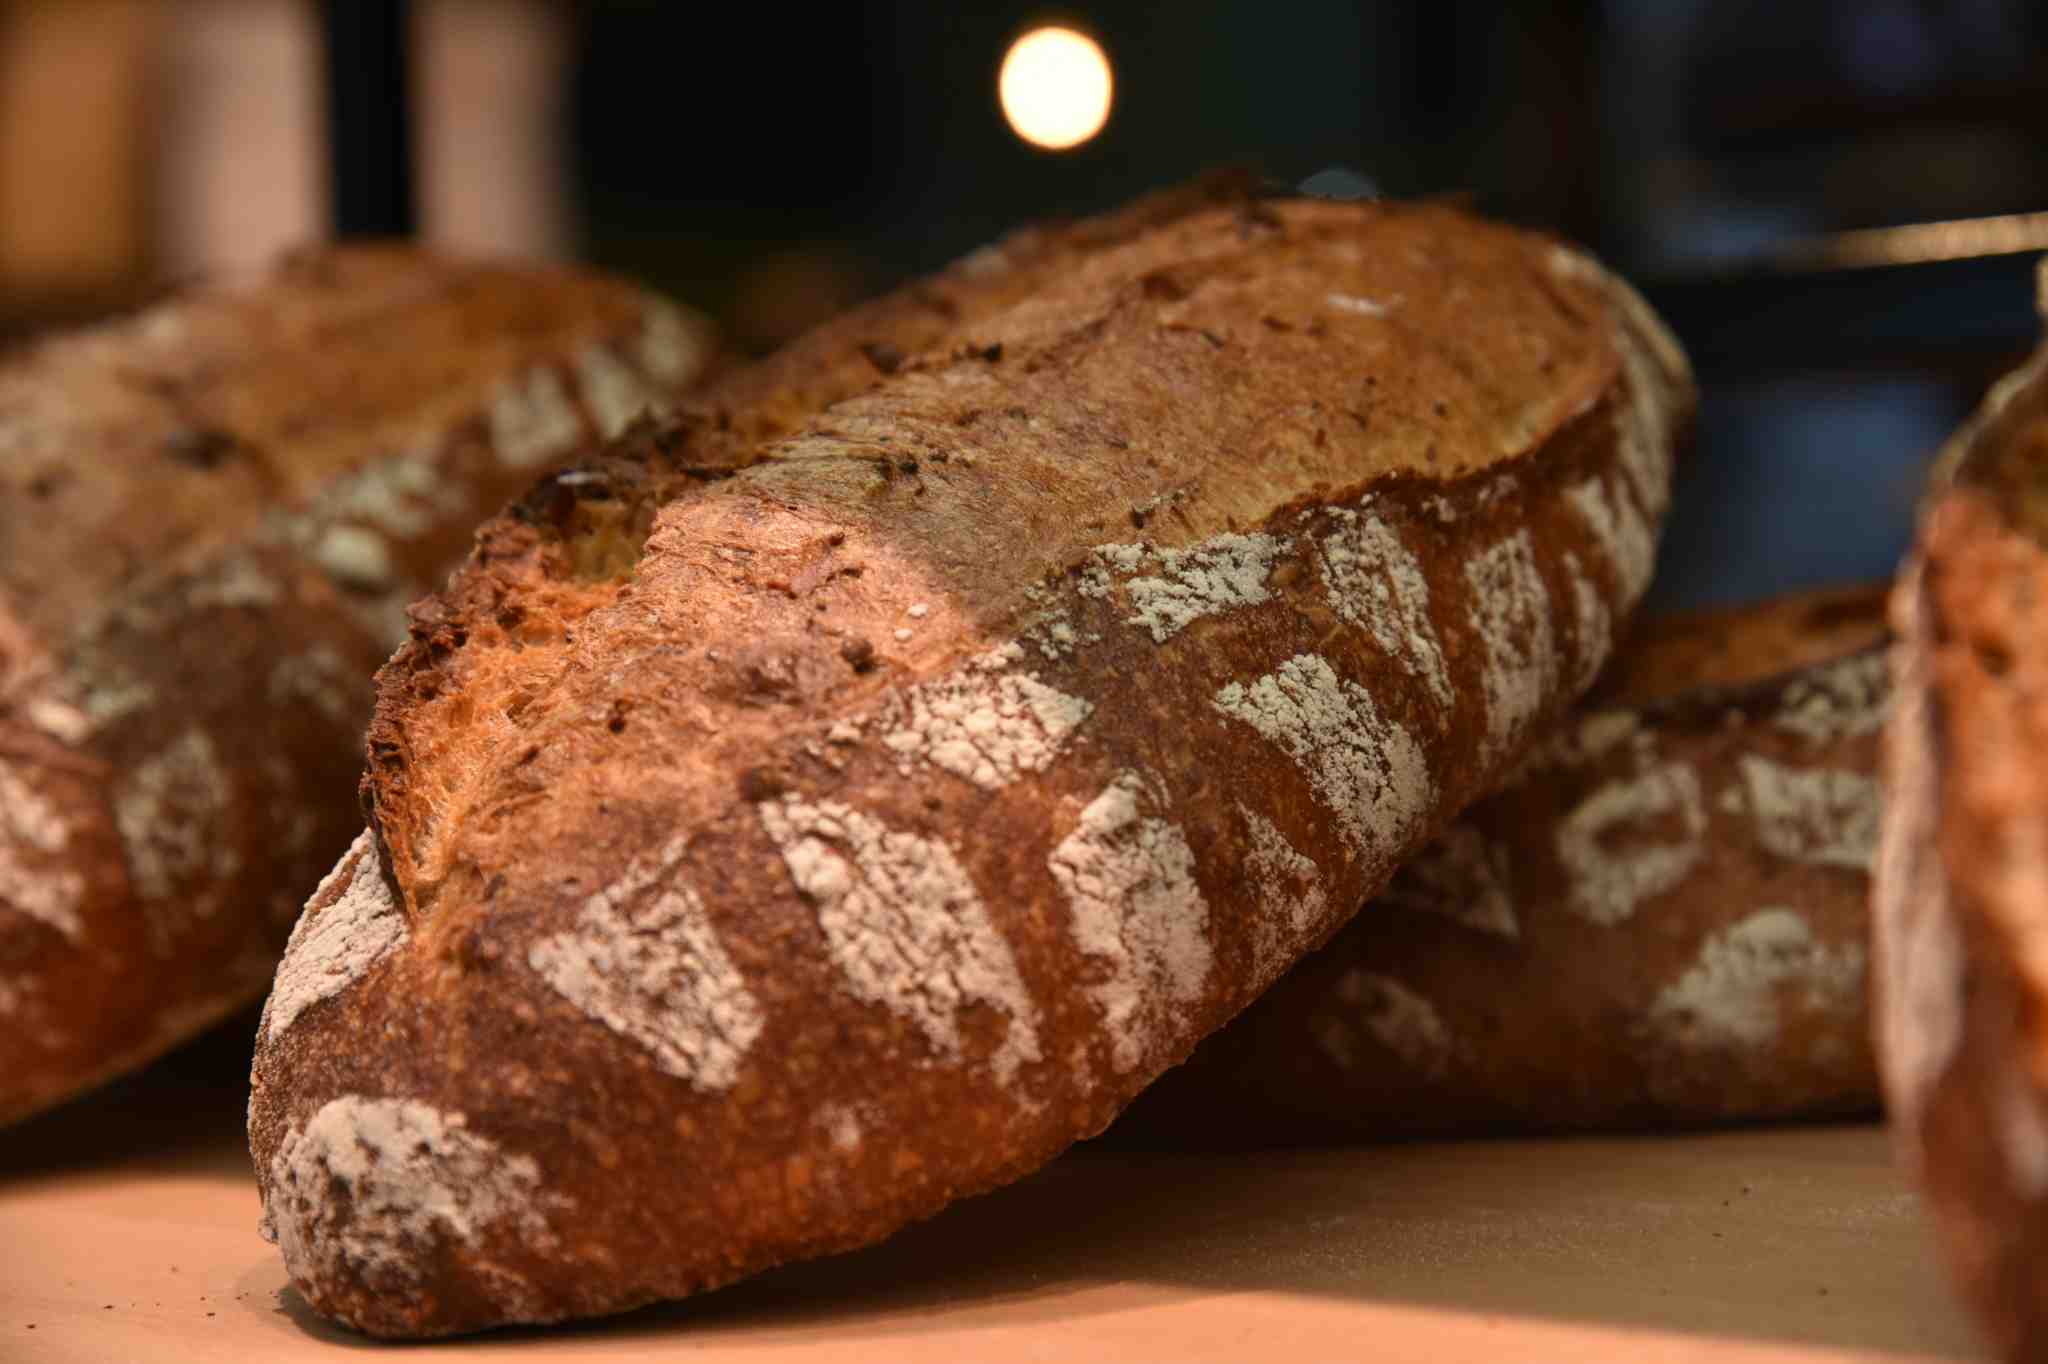 Le mélange de graines et légumineuses pour une recette de pain innovante « Grain Gourmand »